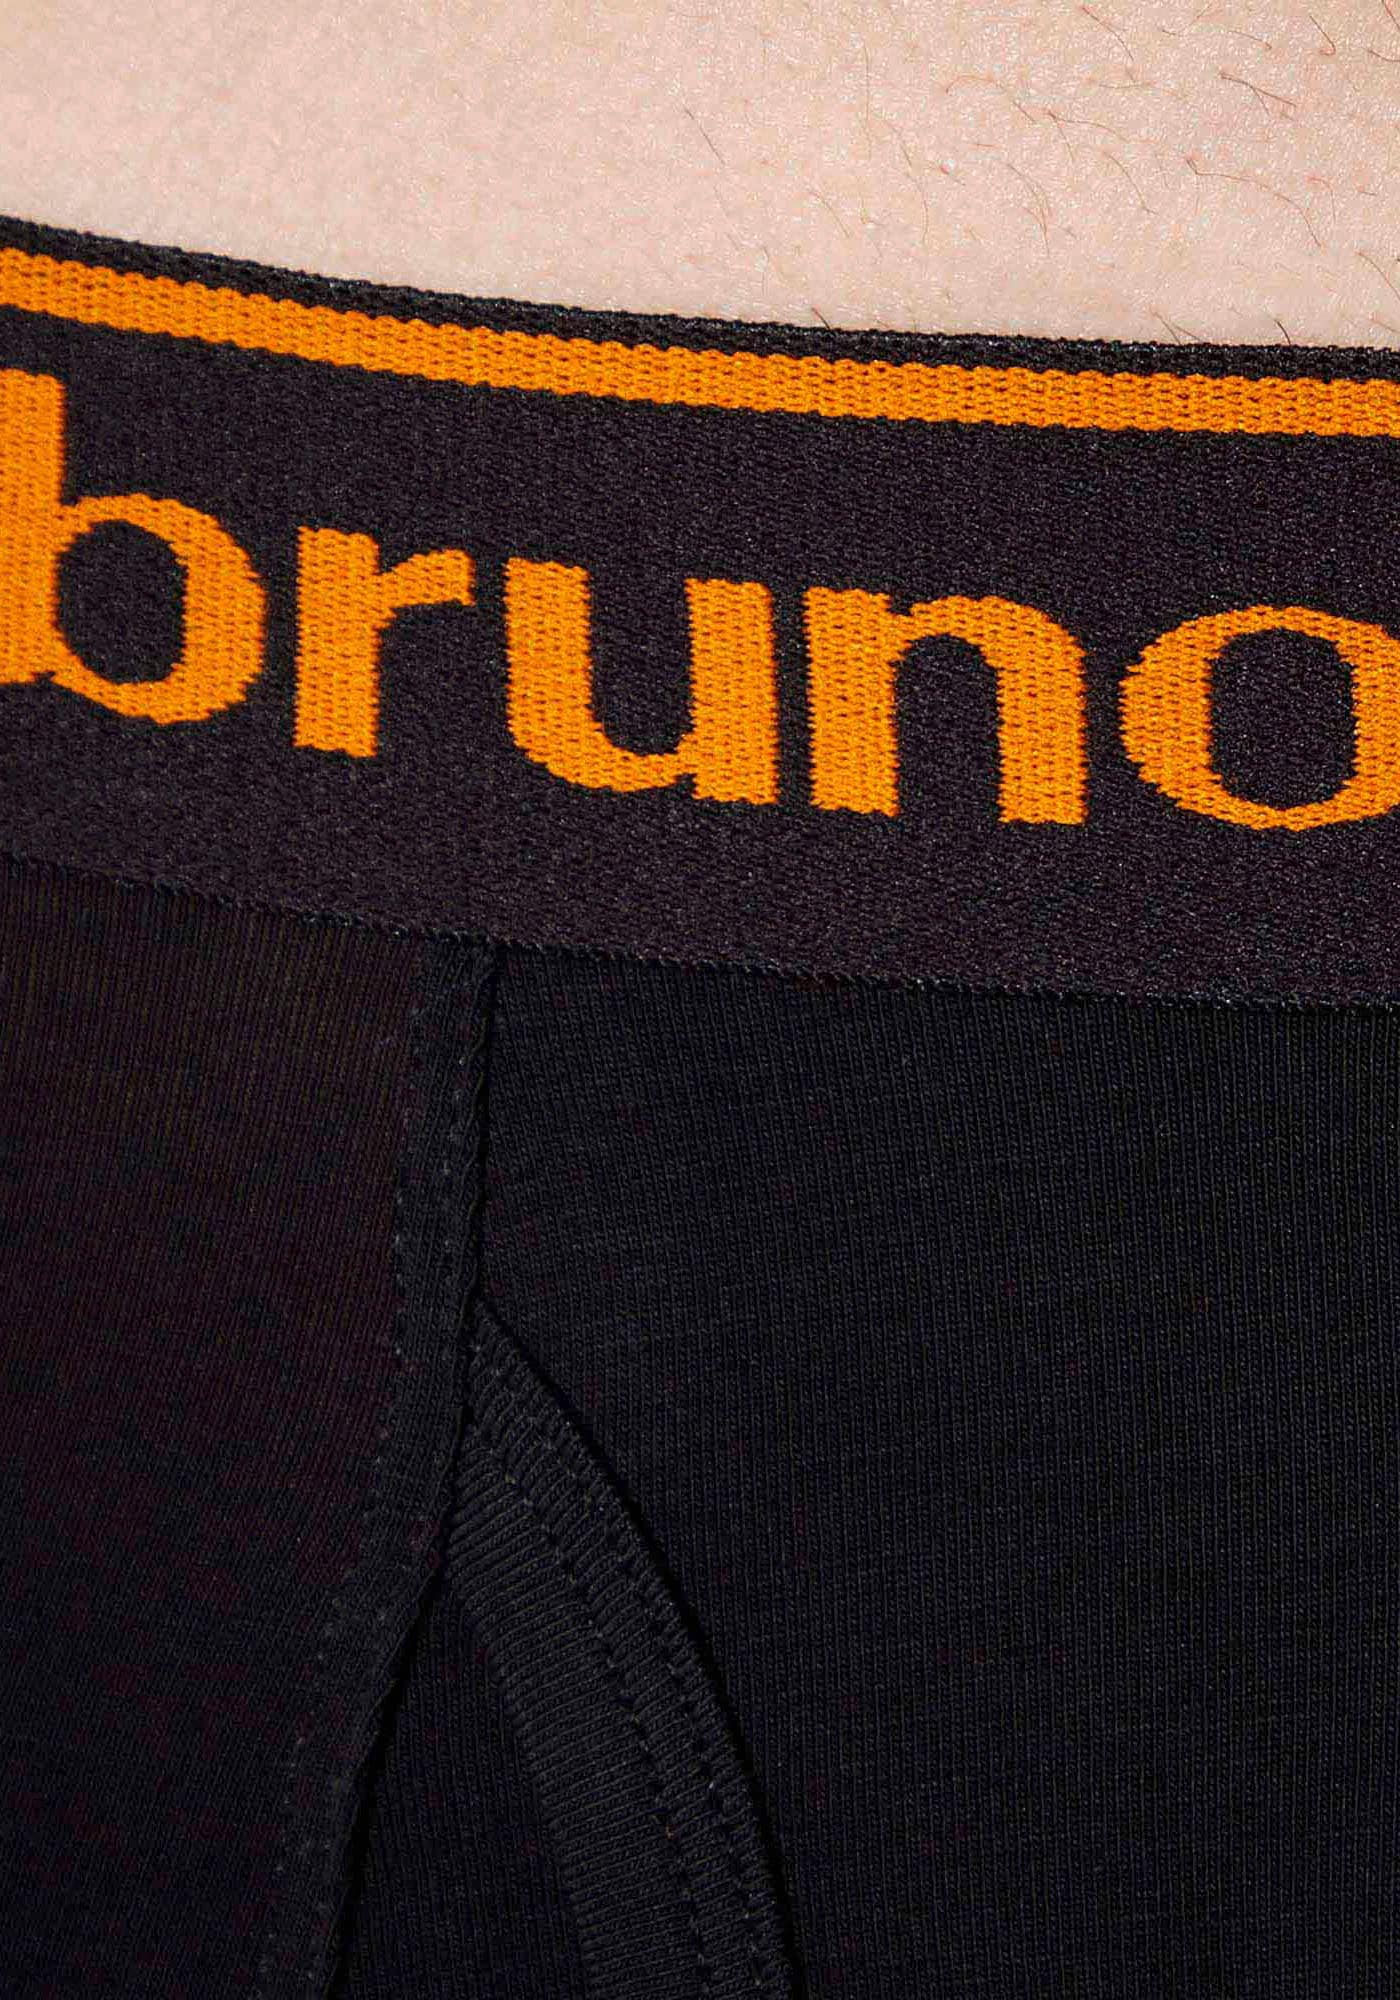 Bruno Banani Boxershorts »Short 2Pack Quick Access«, (Packung, 2er-Pack), Kontrastfarbene Details